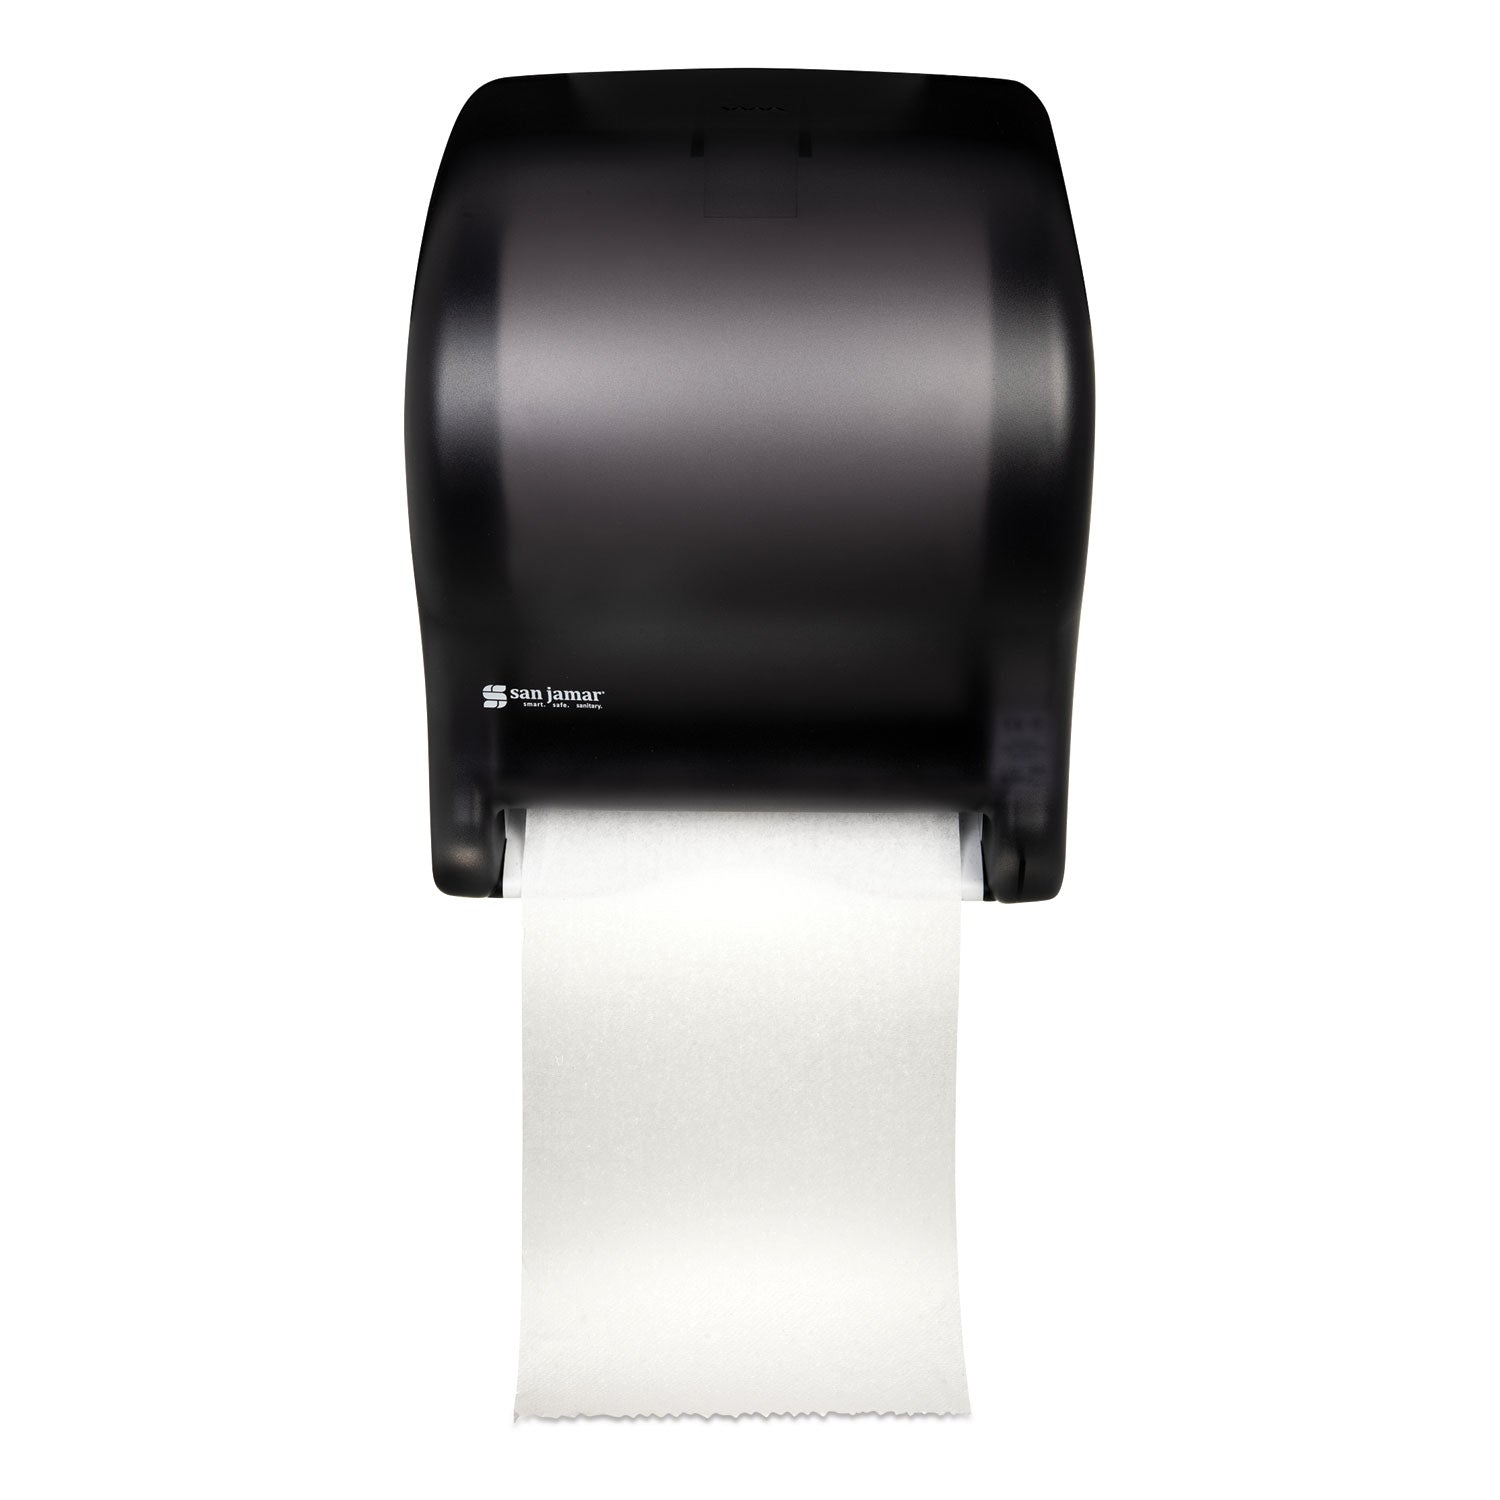 Tear-N-Dry Essence Automatic Dispenser, Classic, 11.75 x 9.13 x 14.44, Black Pearl - 